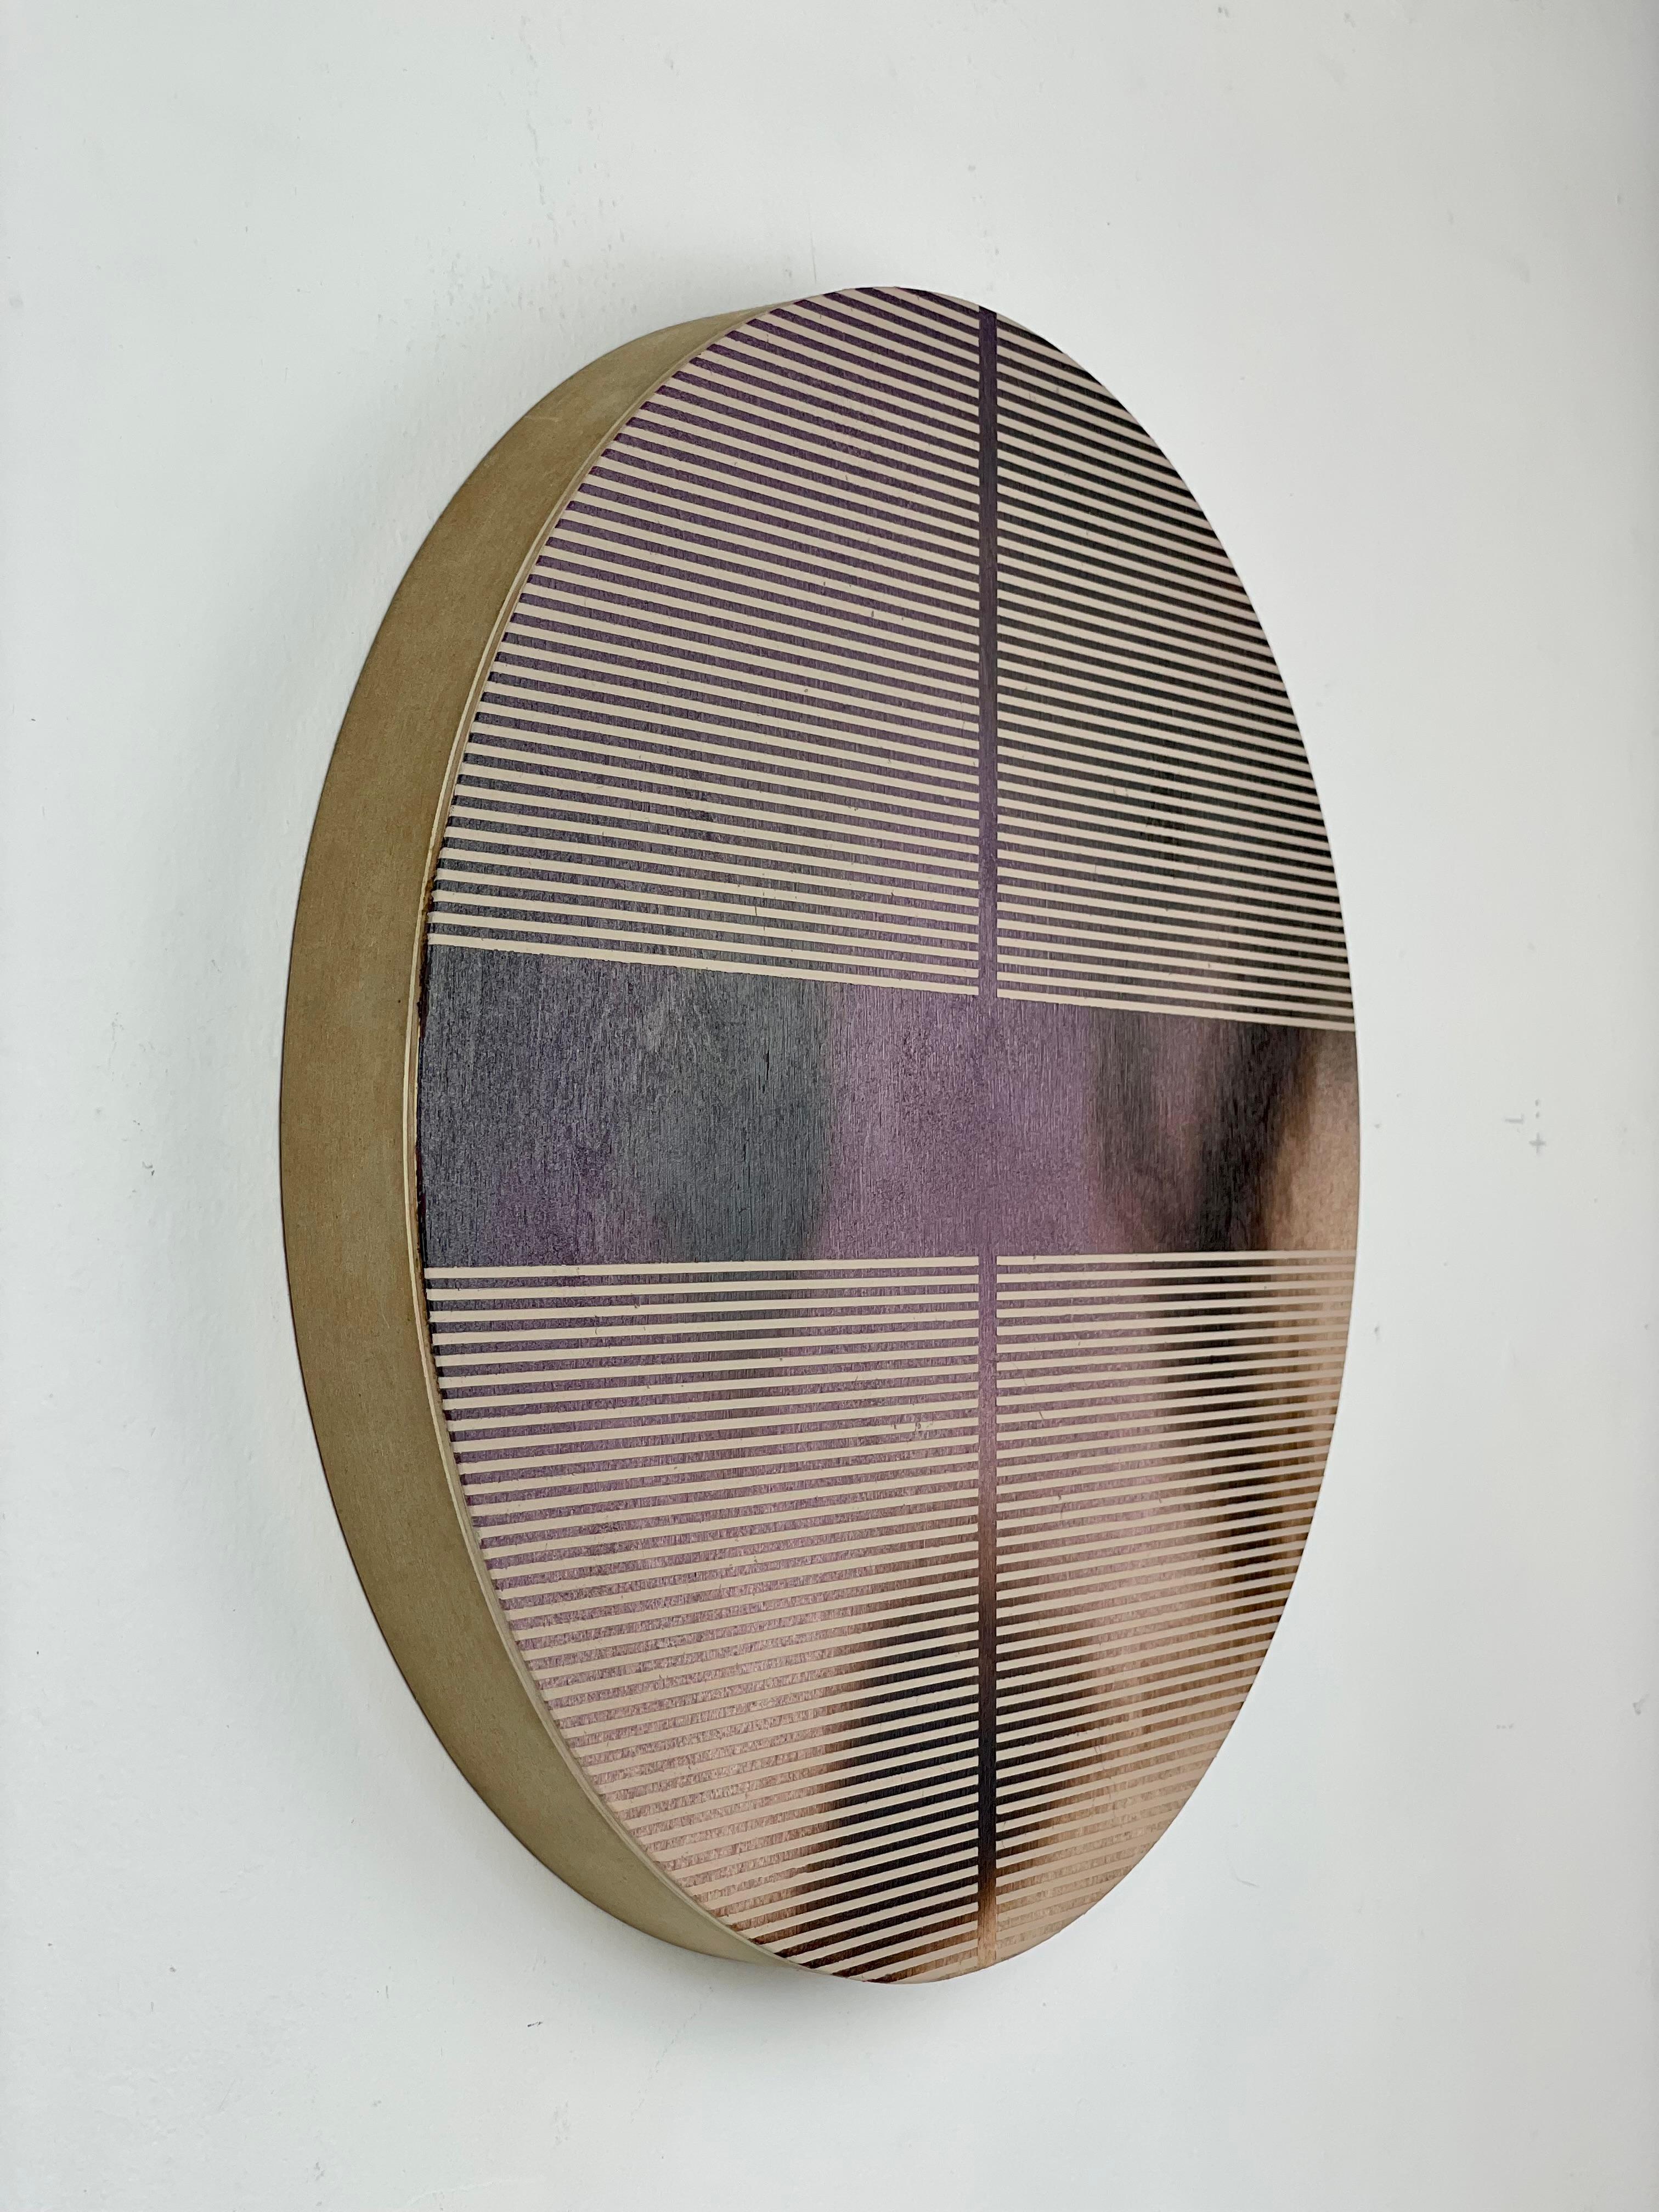 Aubergine Lila Pille (minimalistisches, rundes Gemälde auf Holz dopamine) (Geometrische Abstraktion), Mixed Media Art, von Melisa Taylor Metzger